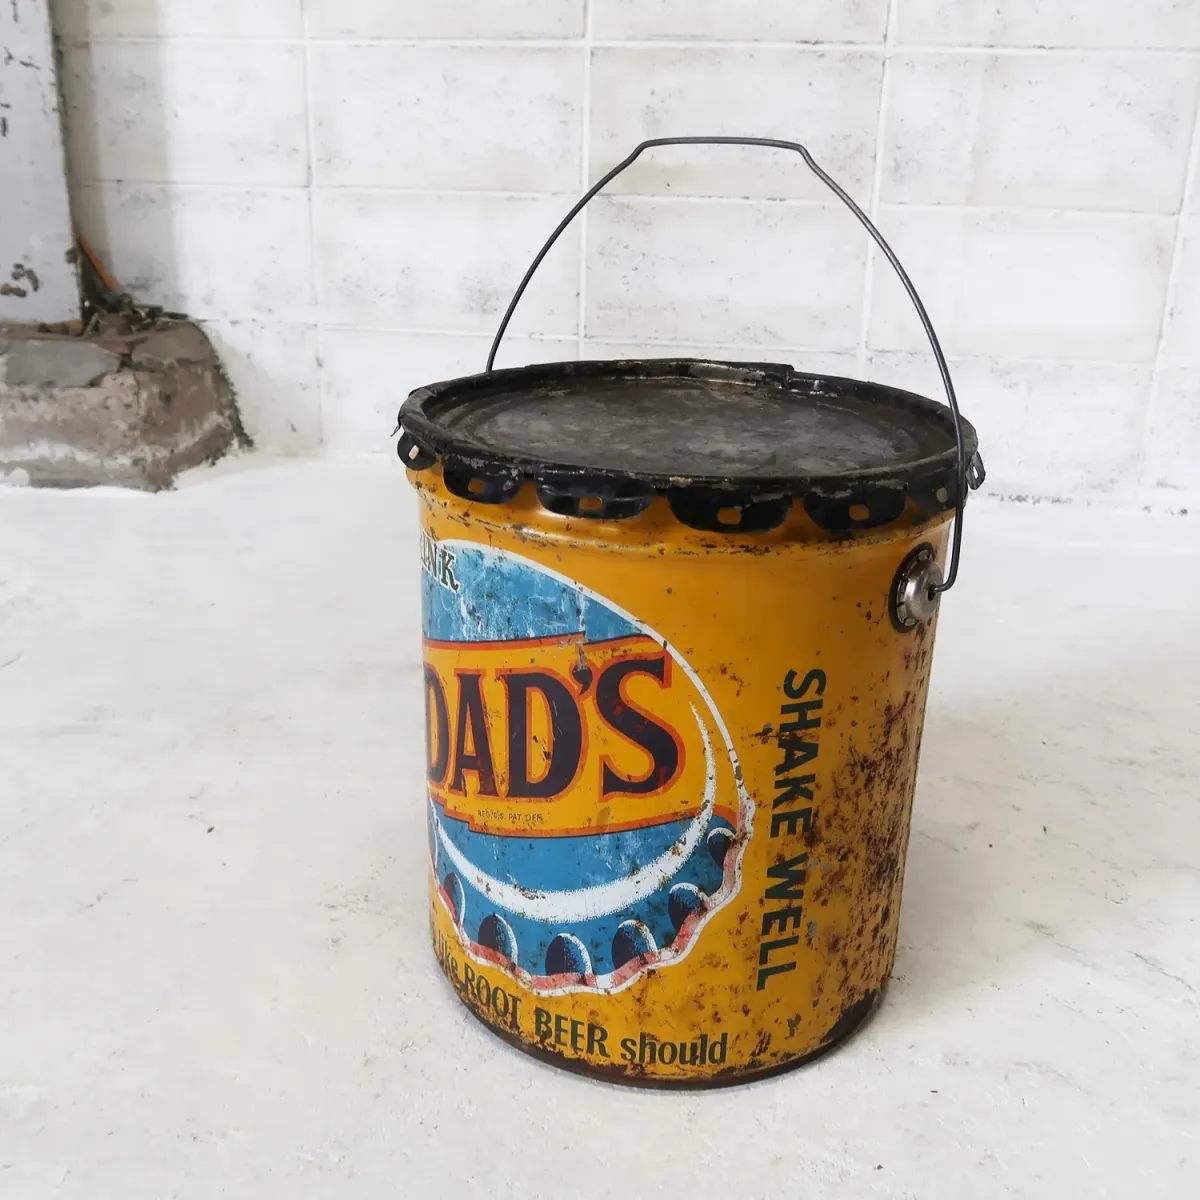 DAD'S ビンテージ シロップ缶